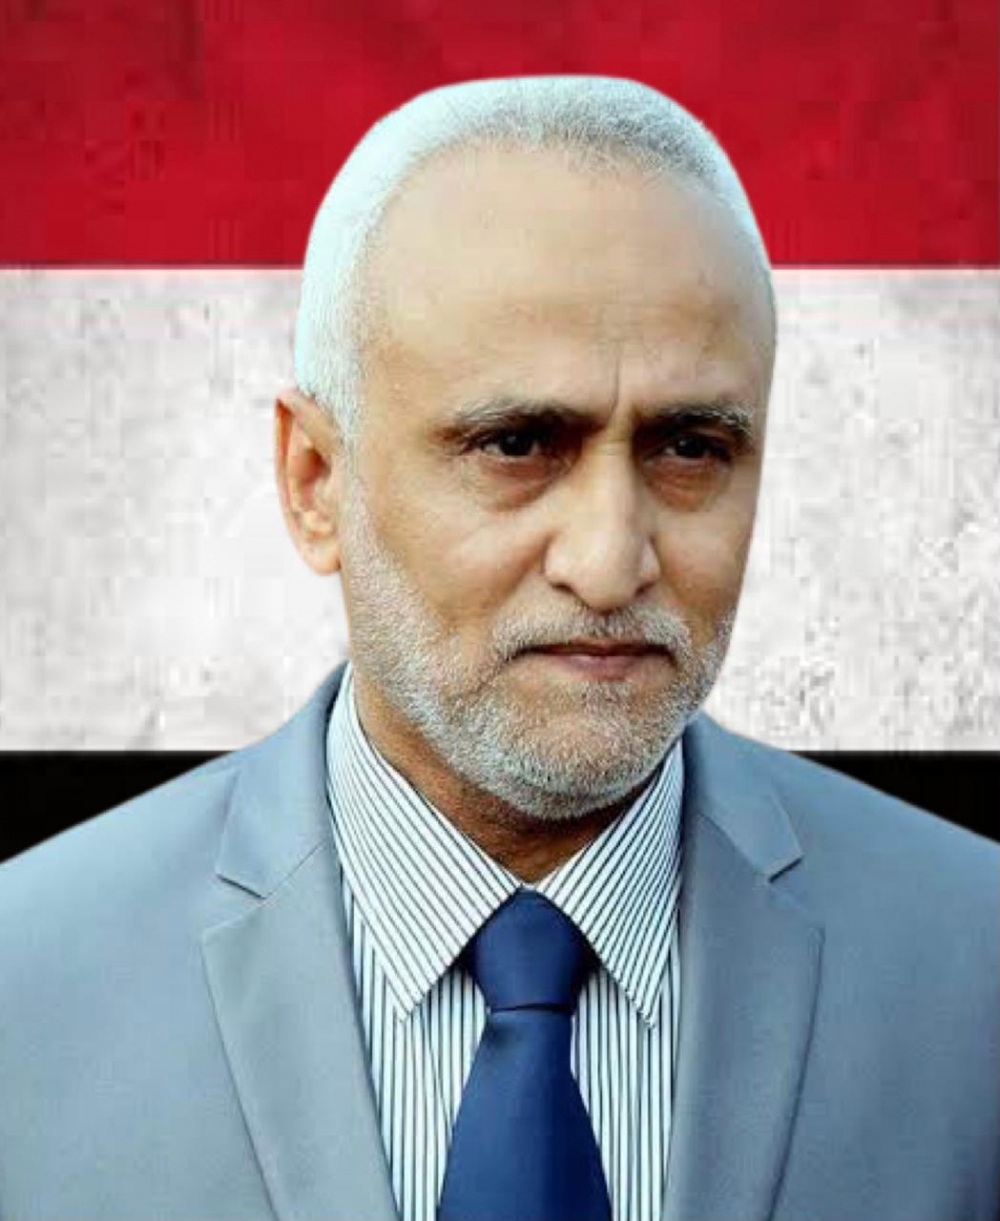 فقط في اليمن تعرف على سائق العيسي الذي تحول بقدرة قادر من مسؤل مالي لدائرة حزب الإصلاح اخوان اليمن الى نائب رئيس مجلس الشورى